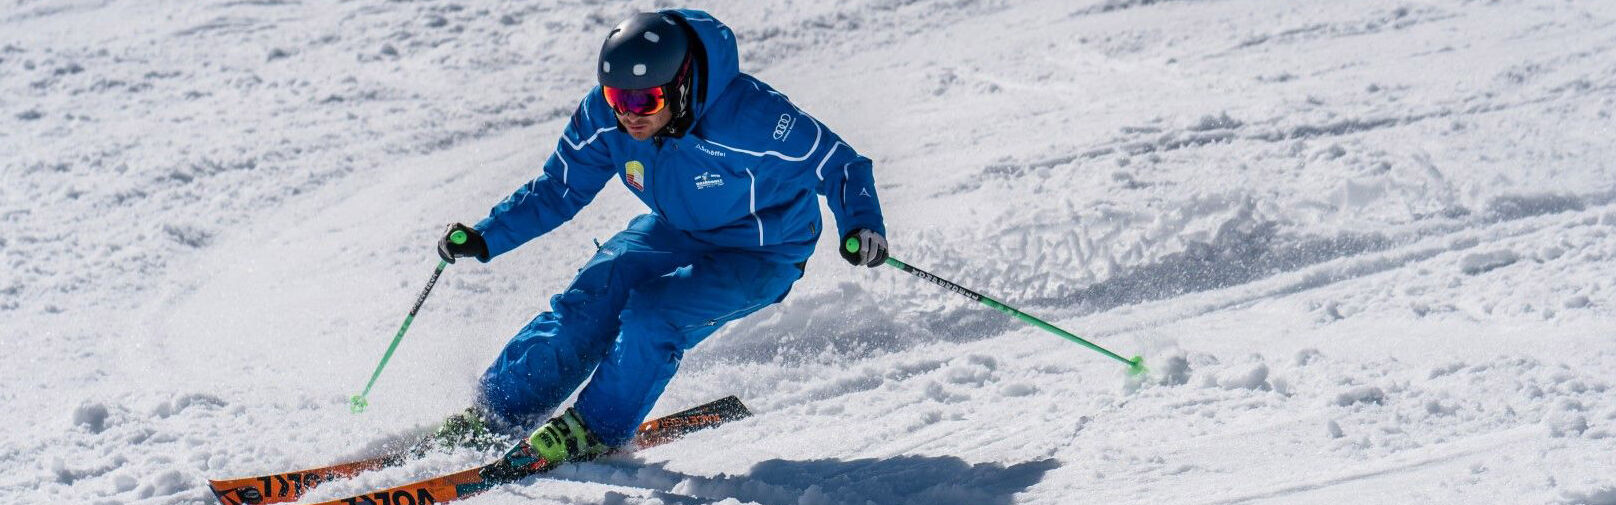 Skifahren lernen in Flachau - Skikurse, Snowboardkurse - Skischule Flachau